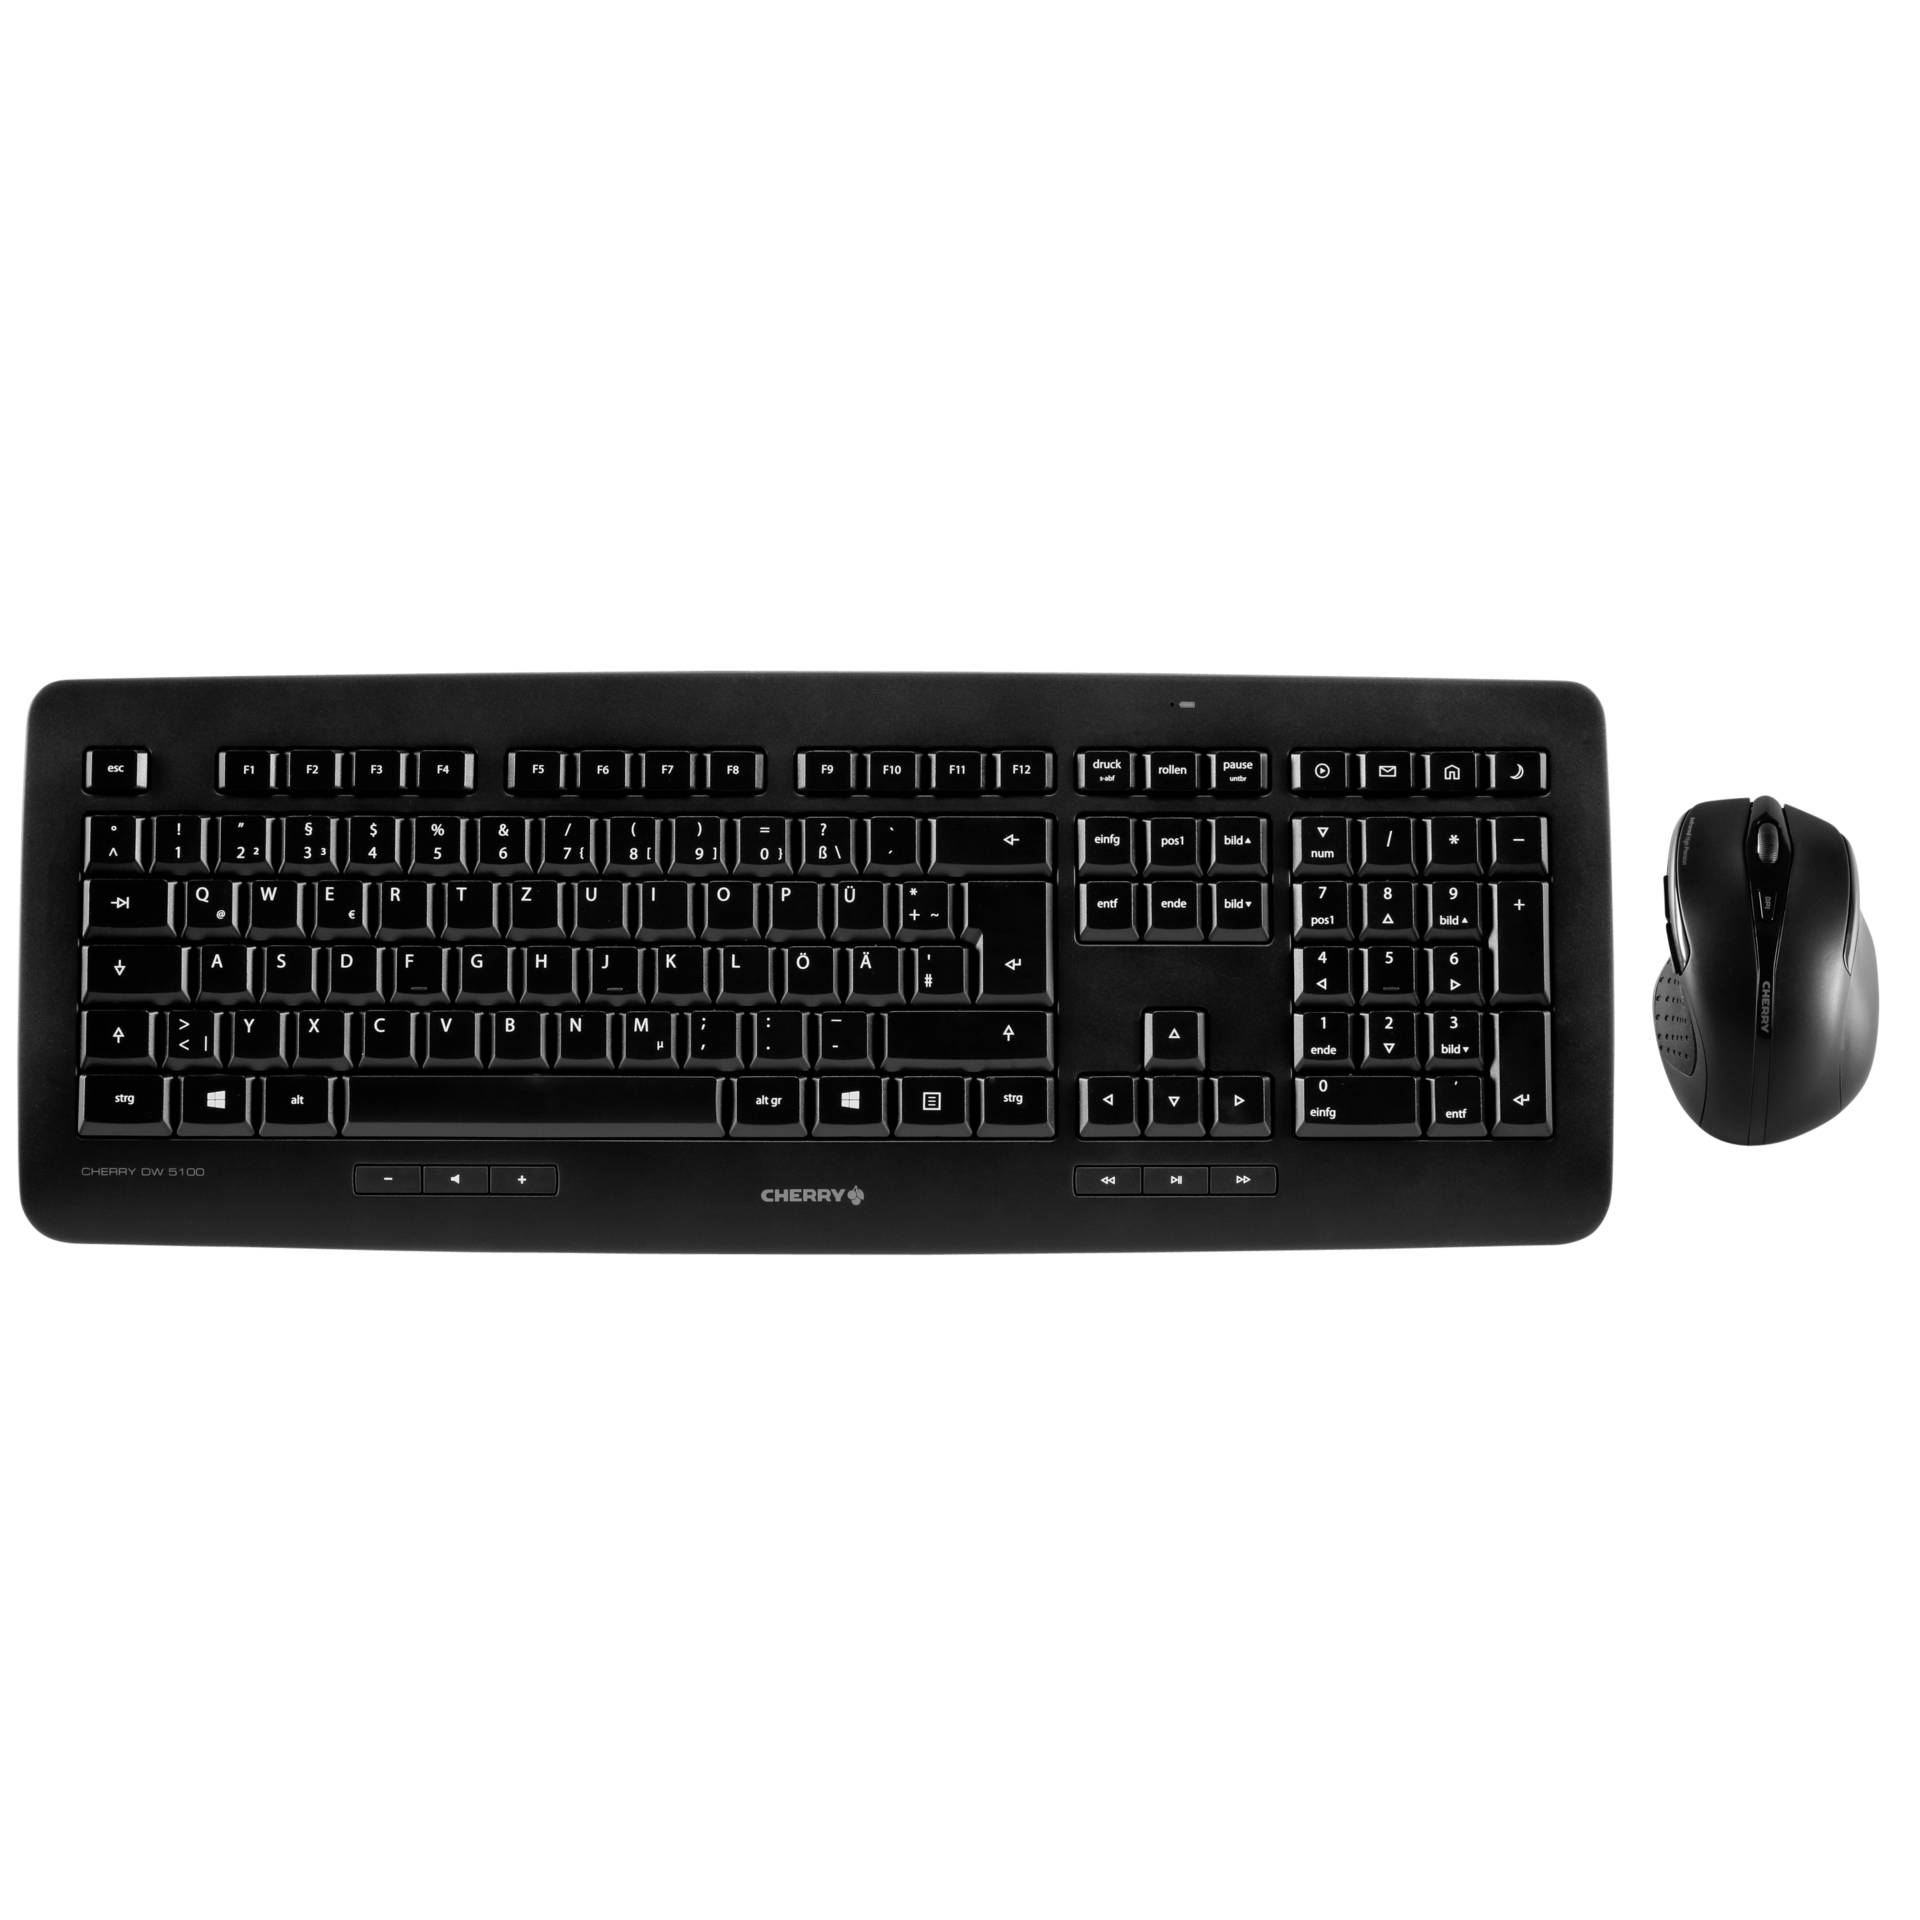 Cherry DW 5100 schwarz, USB Tastatur-Maus-Kombination 